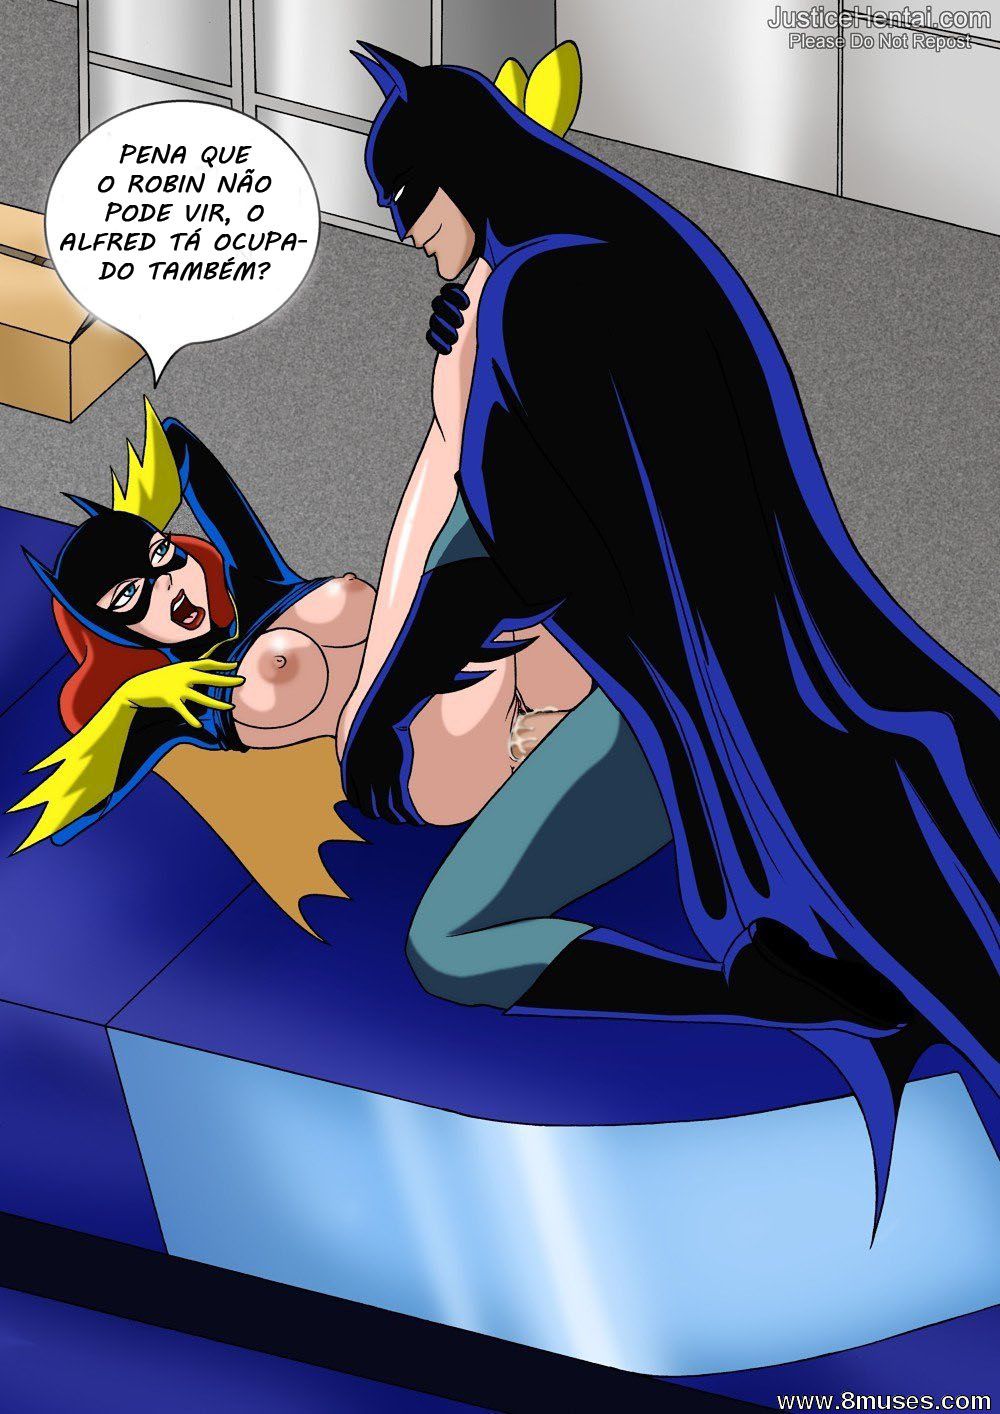 Batgirl 2: Acho que um dos universos que mais tem mulher gostosa é provavelmente do Batman. Lá tem tanta mulher boa que nem cabe em um desenho só